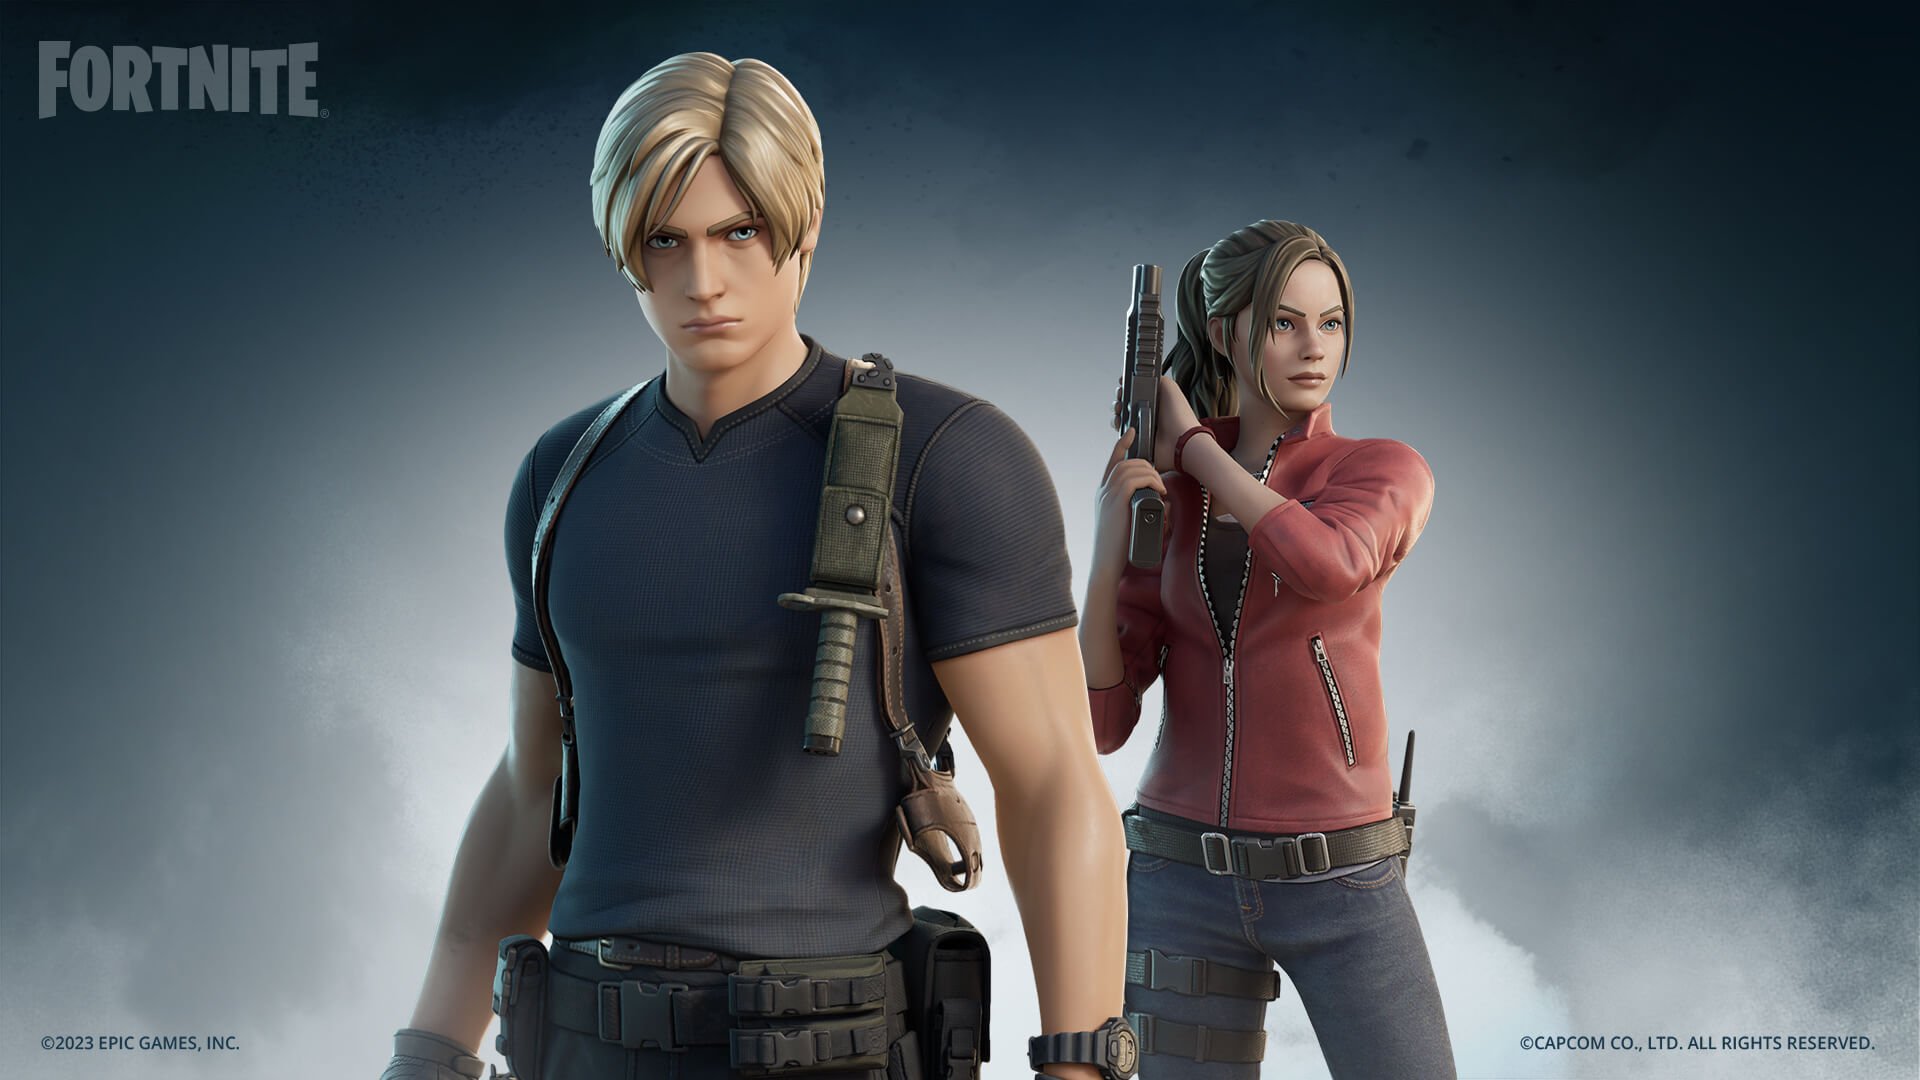 Fortnite Skins - Leon dan Claire Skins dengan gaya remake Resident Evil 4 mereka dan Resident Evil 2 Remake Styles masing -masing